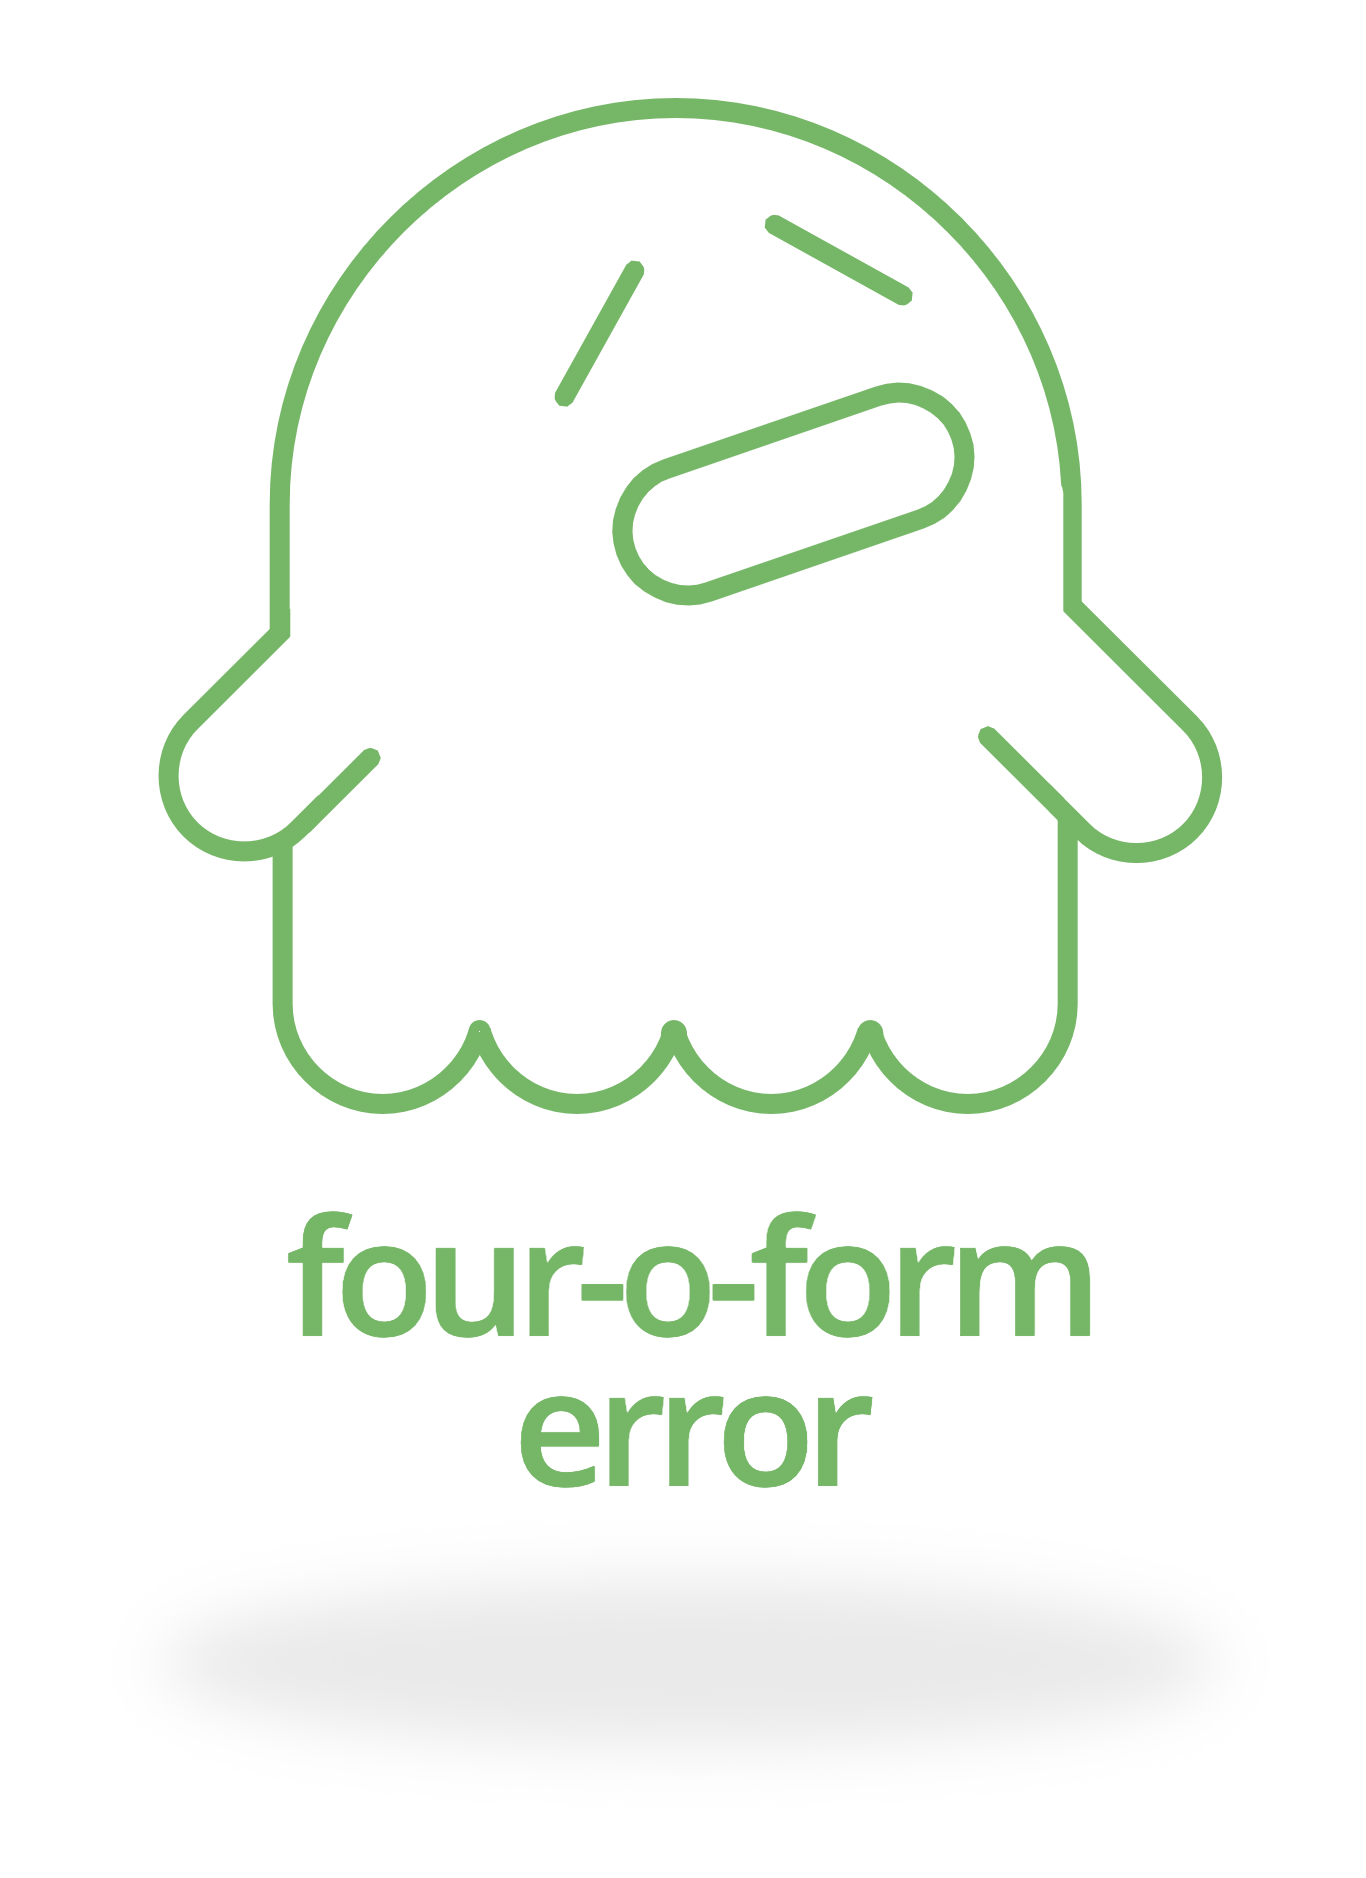 Four-o-form error